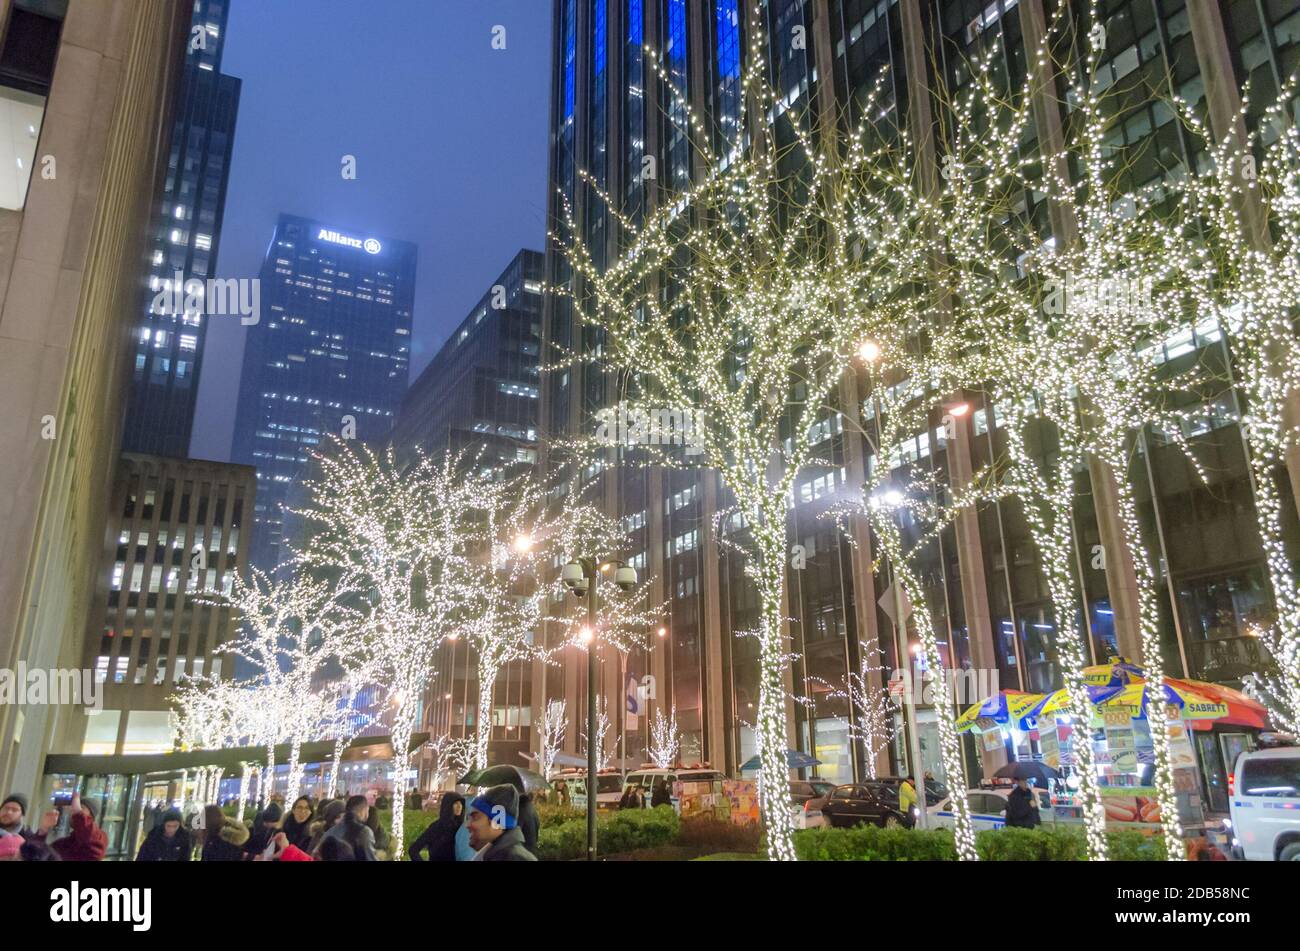 NYC Manhattan Street arbres décorés de lumières vives pendant les vacances de Noël. Gratte-ciel en arrière-plan. New York, États-Unis Banque D'Images